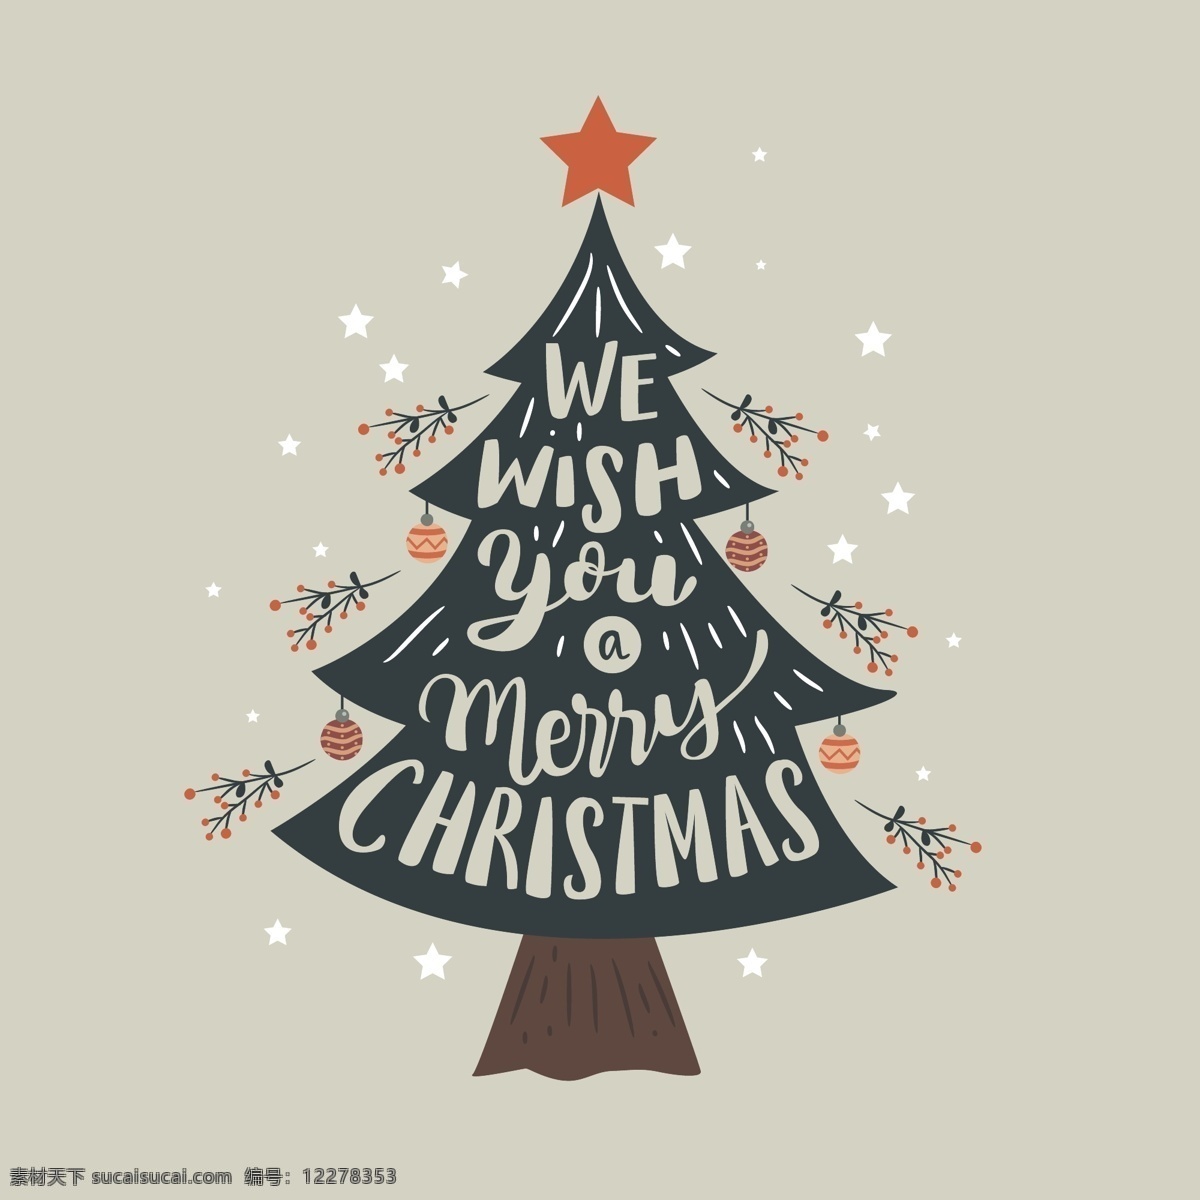 矢量 文字 圣诞树 背景 圣诞节 节日 卡通 过节 庆祝 狂欢 西方节日 假期 扁平